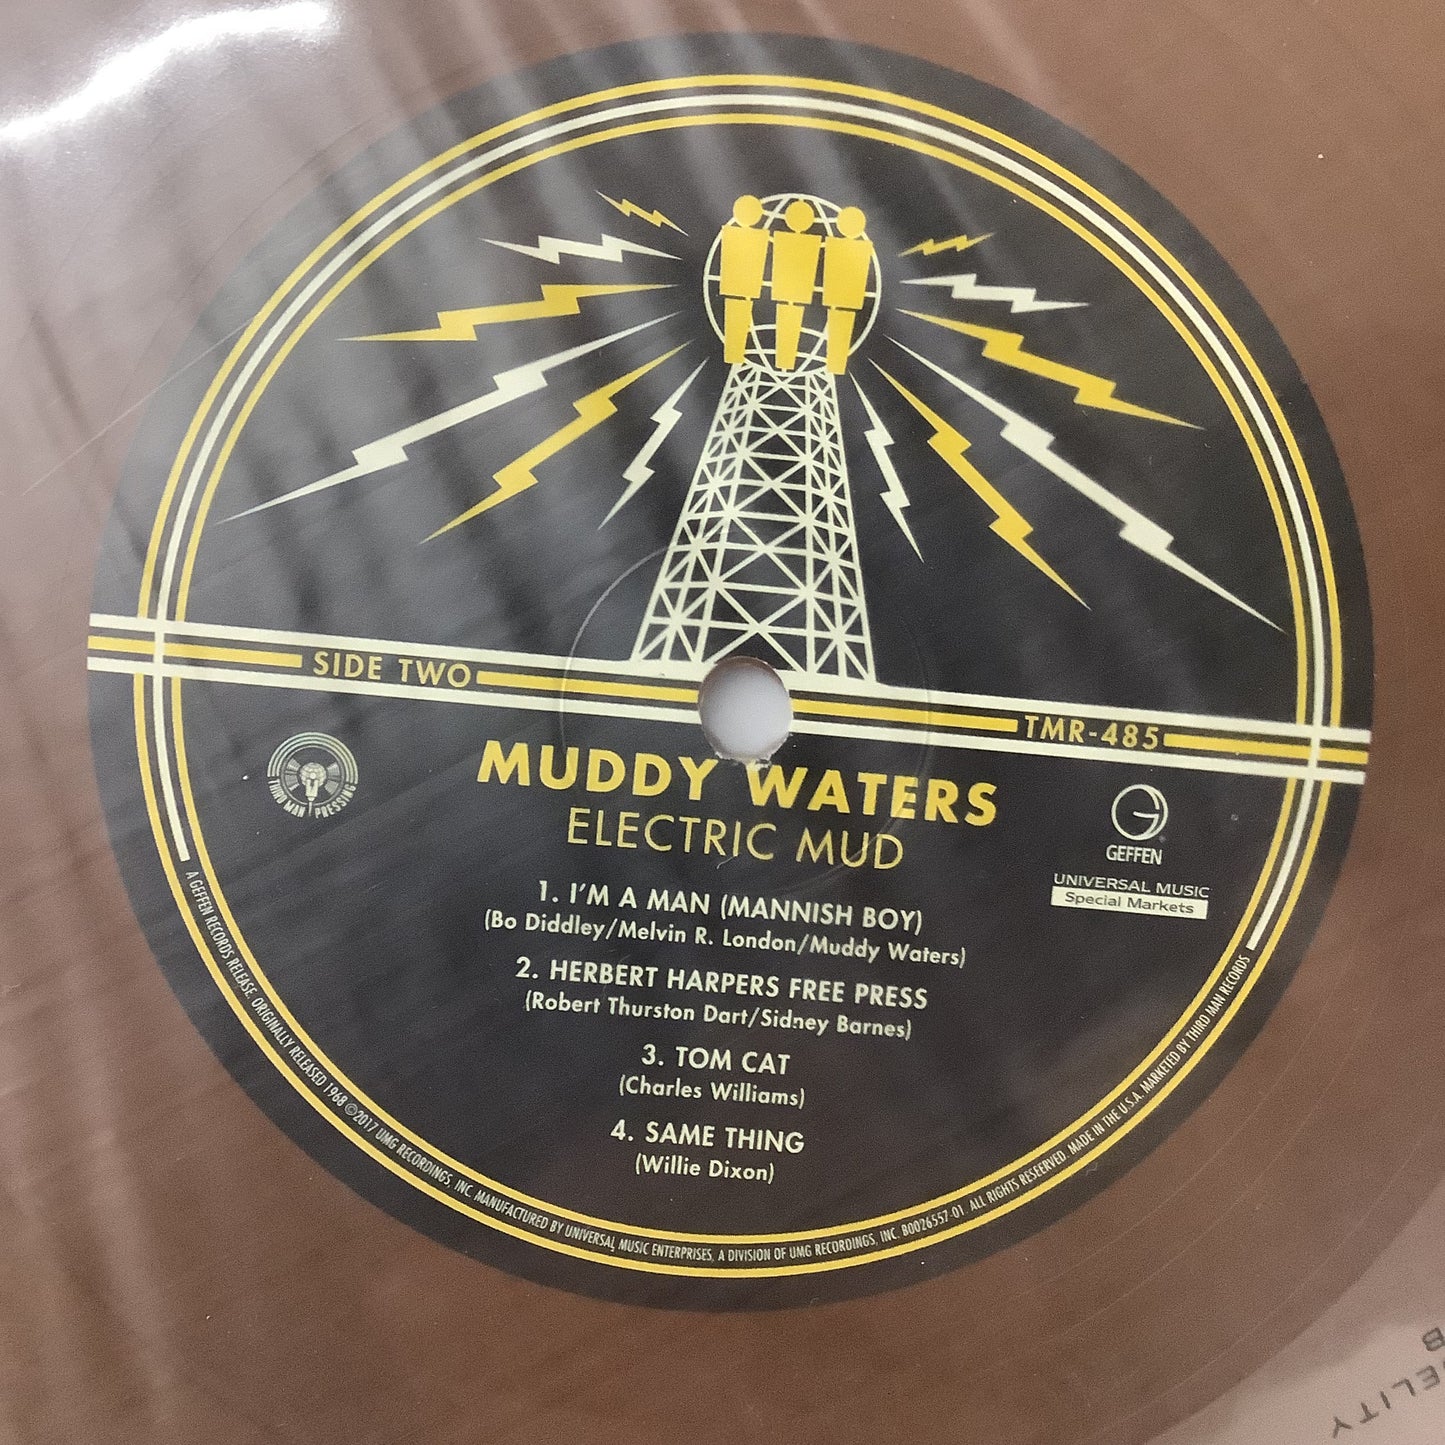 Muddy Waters - Electric Mud - Third Man LP